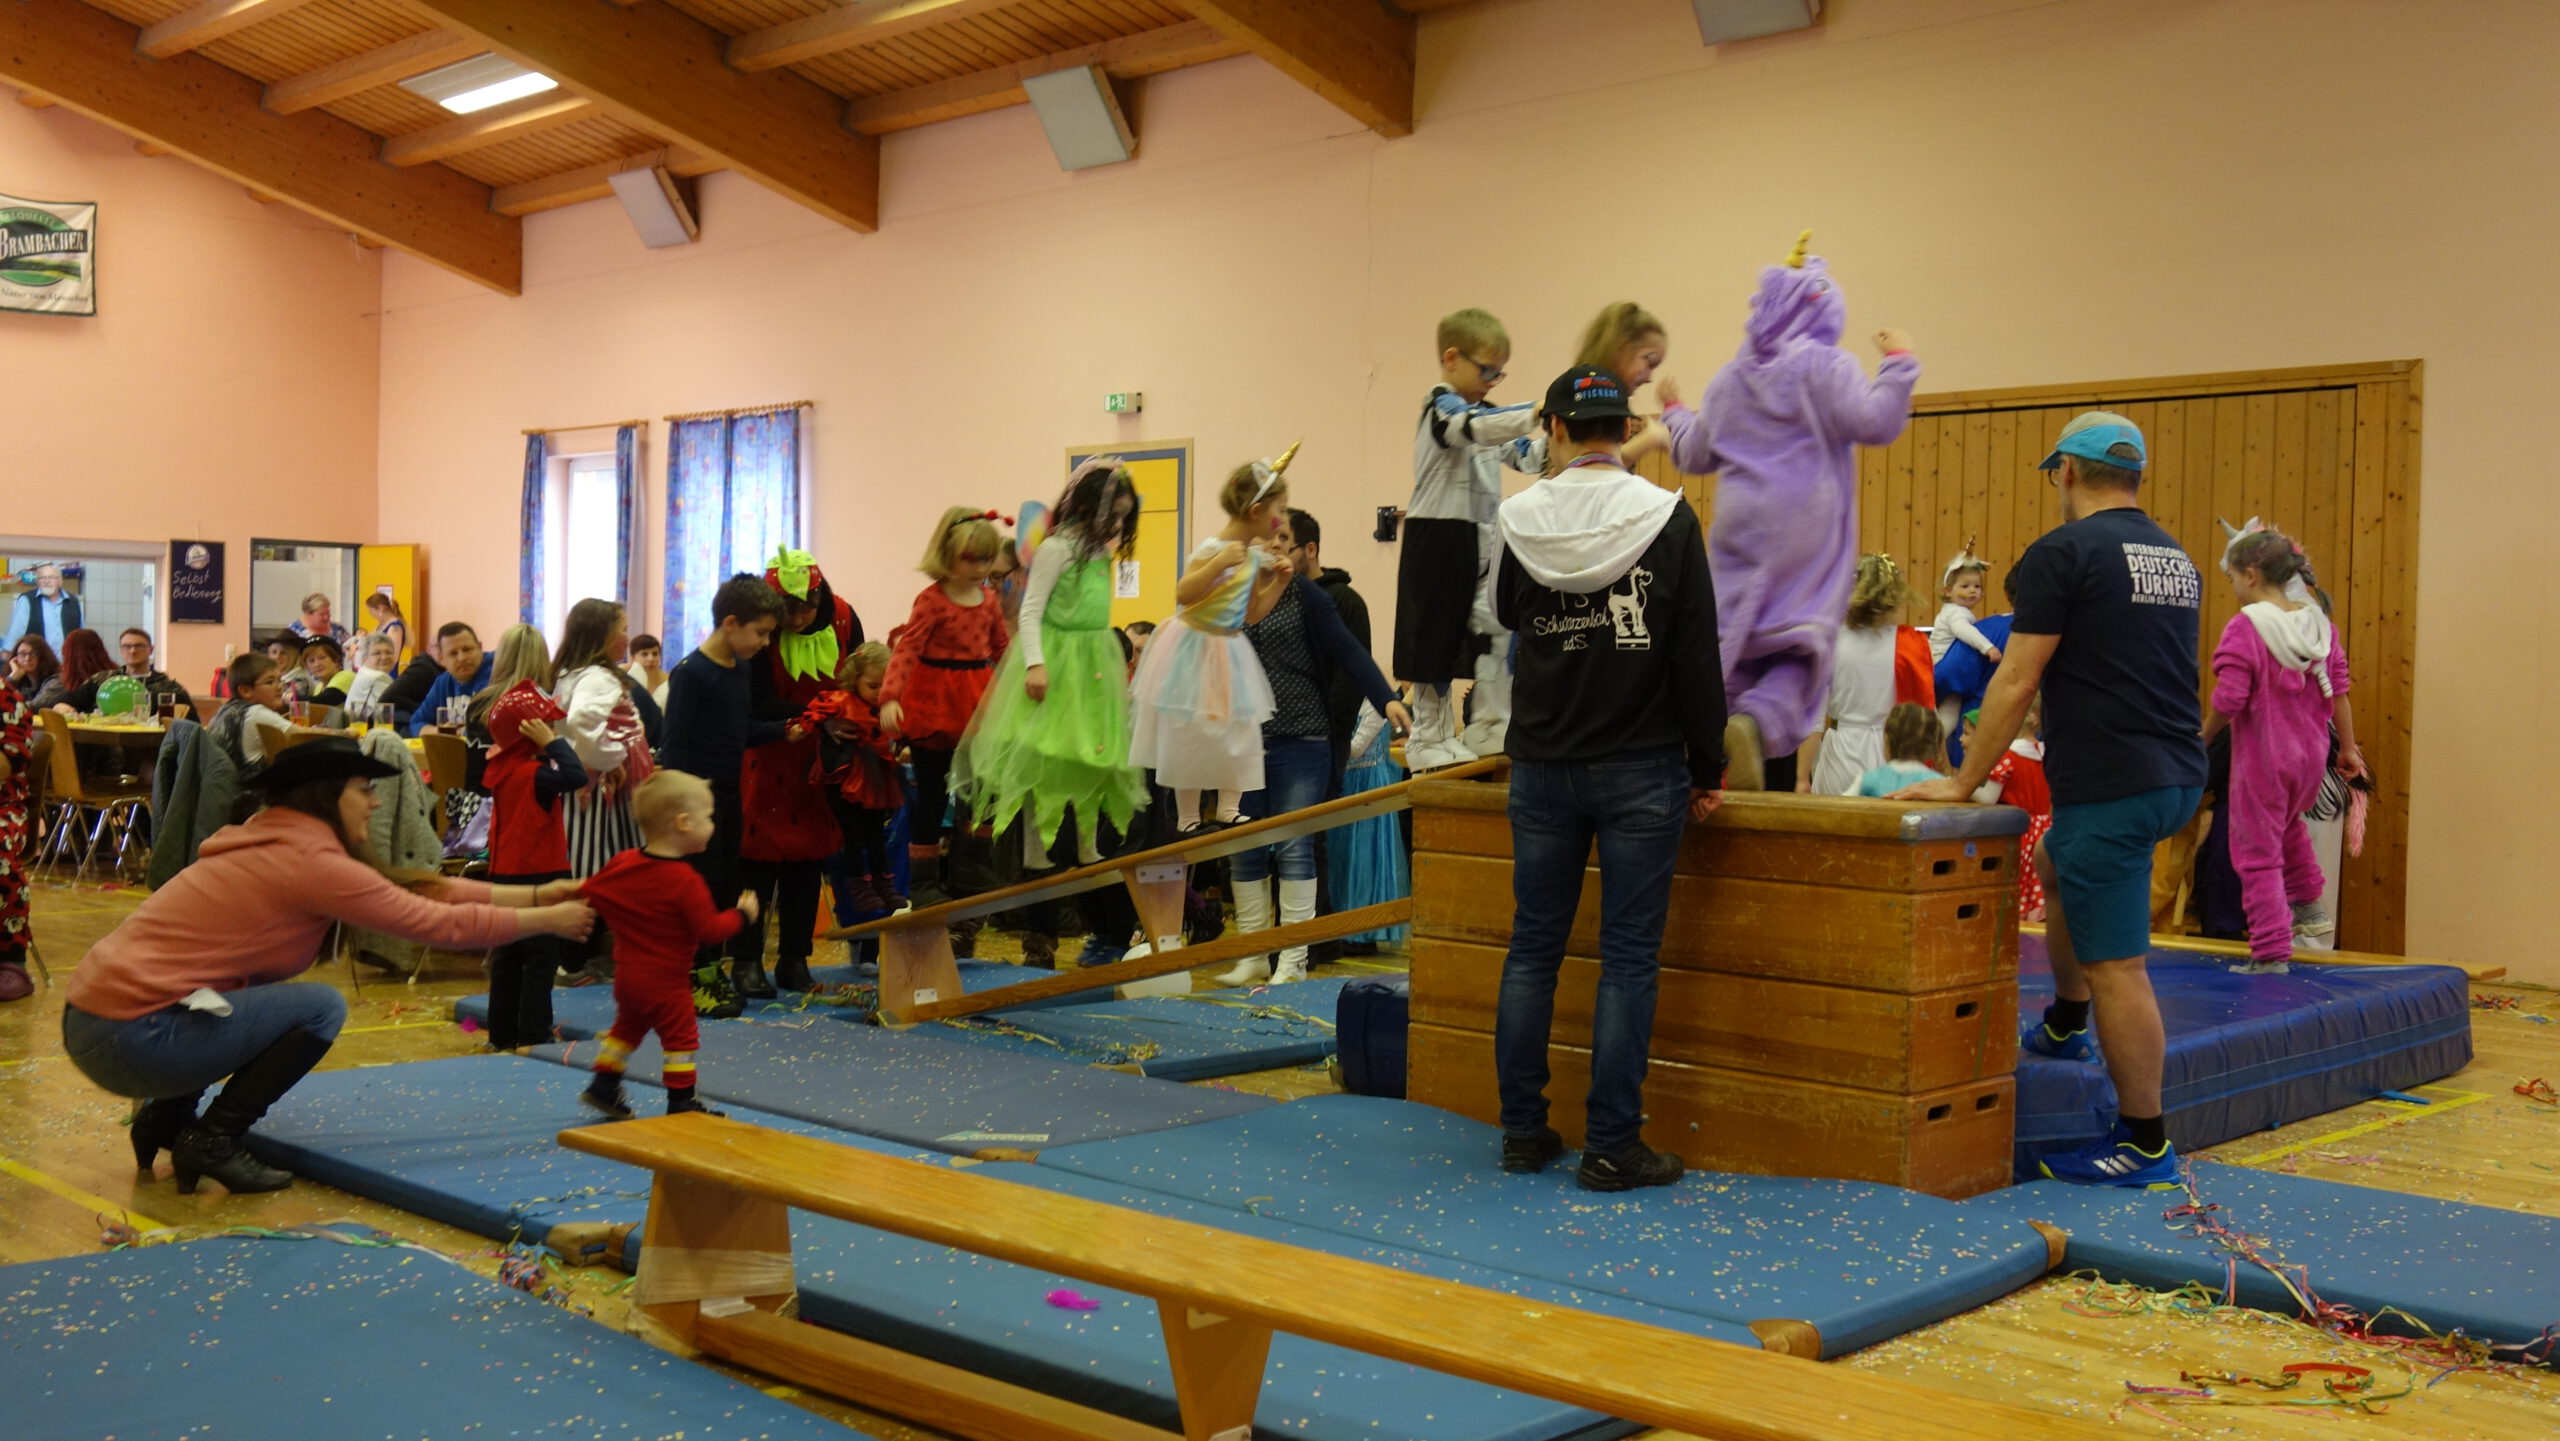 Kinder turnen und spielen in Kostümen an einem Kasten mit Langbänken